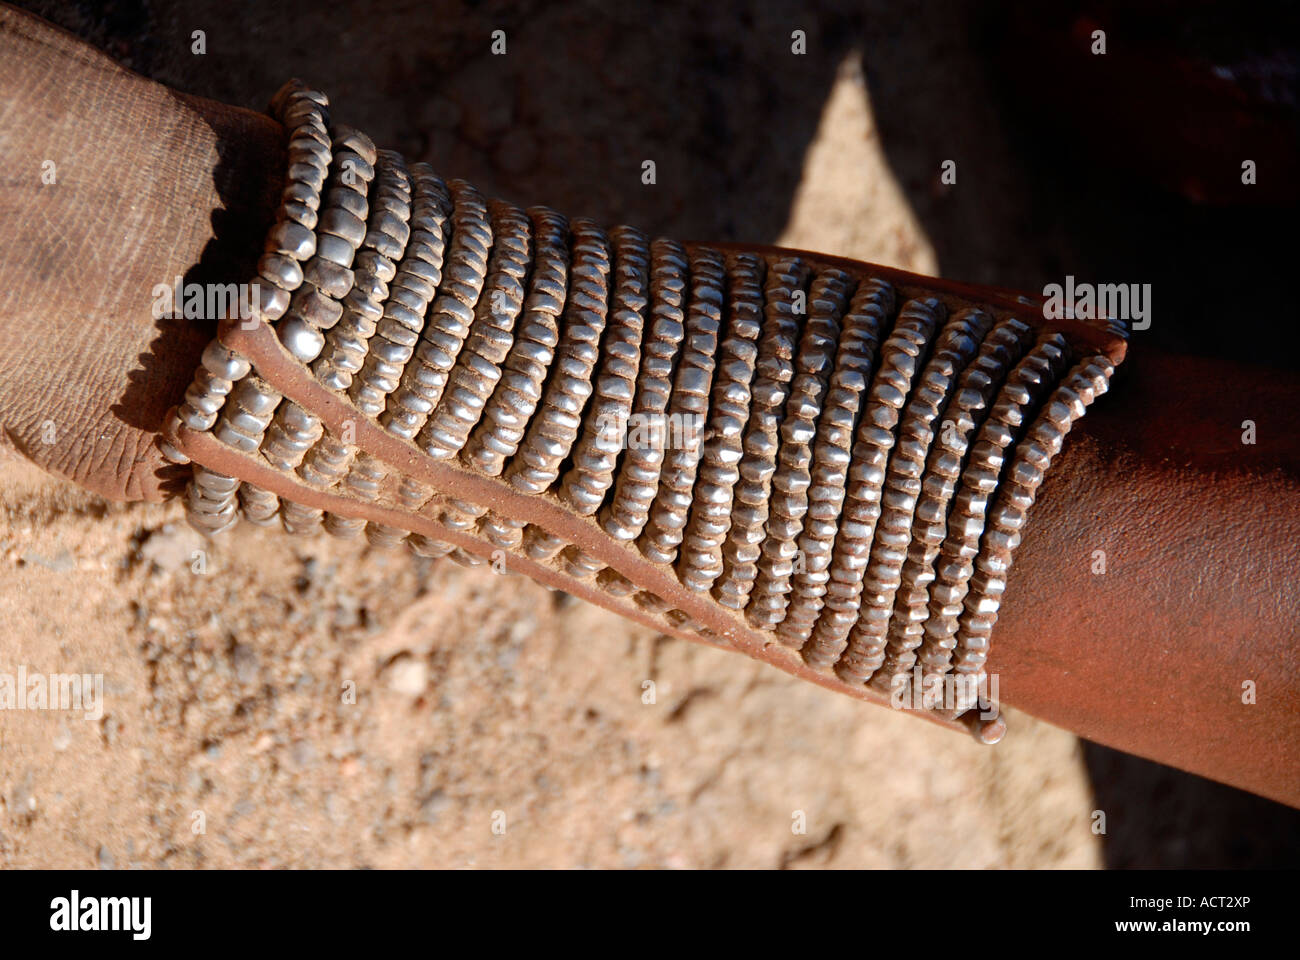 Bracelet de cheville Himba Namibie Afrique Australe Kaokoveld Banque D'Images